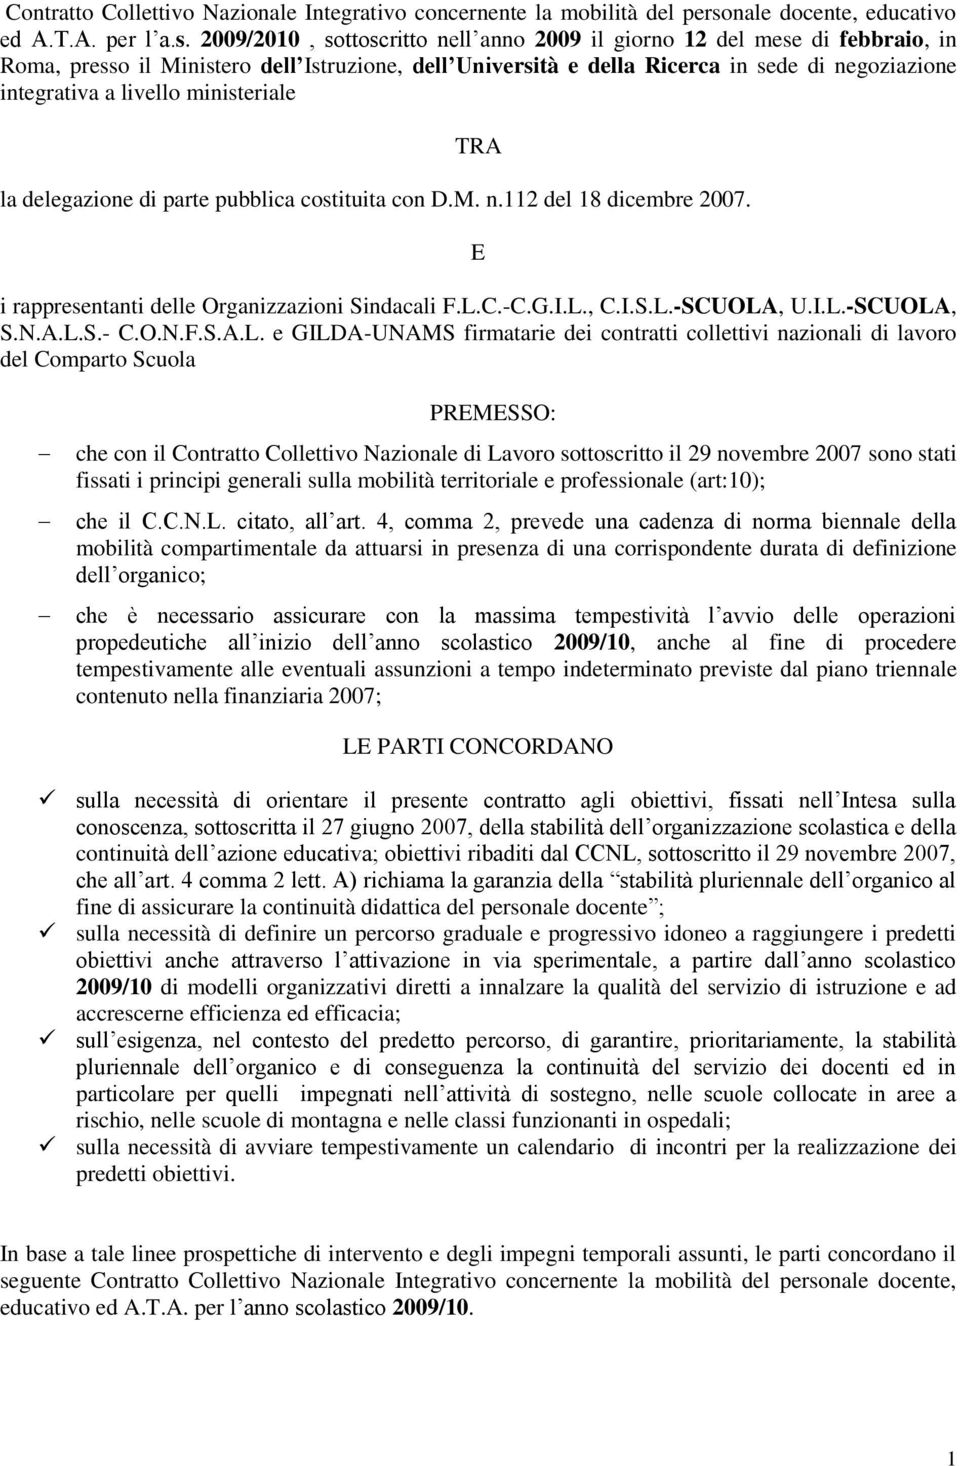 2009/2010, sottoscritto nell anno 2009 il giorno 12 del mese di febbraio, in Roma, presso il Ministero dell Istruzione, dell Università e della Ricerca in sede di negoziazione integrativa a livello